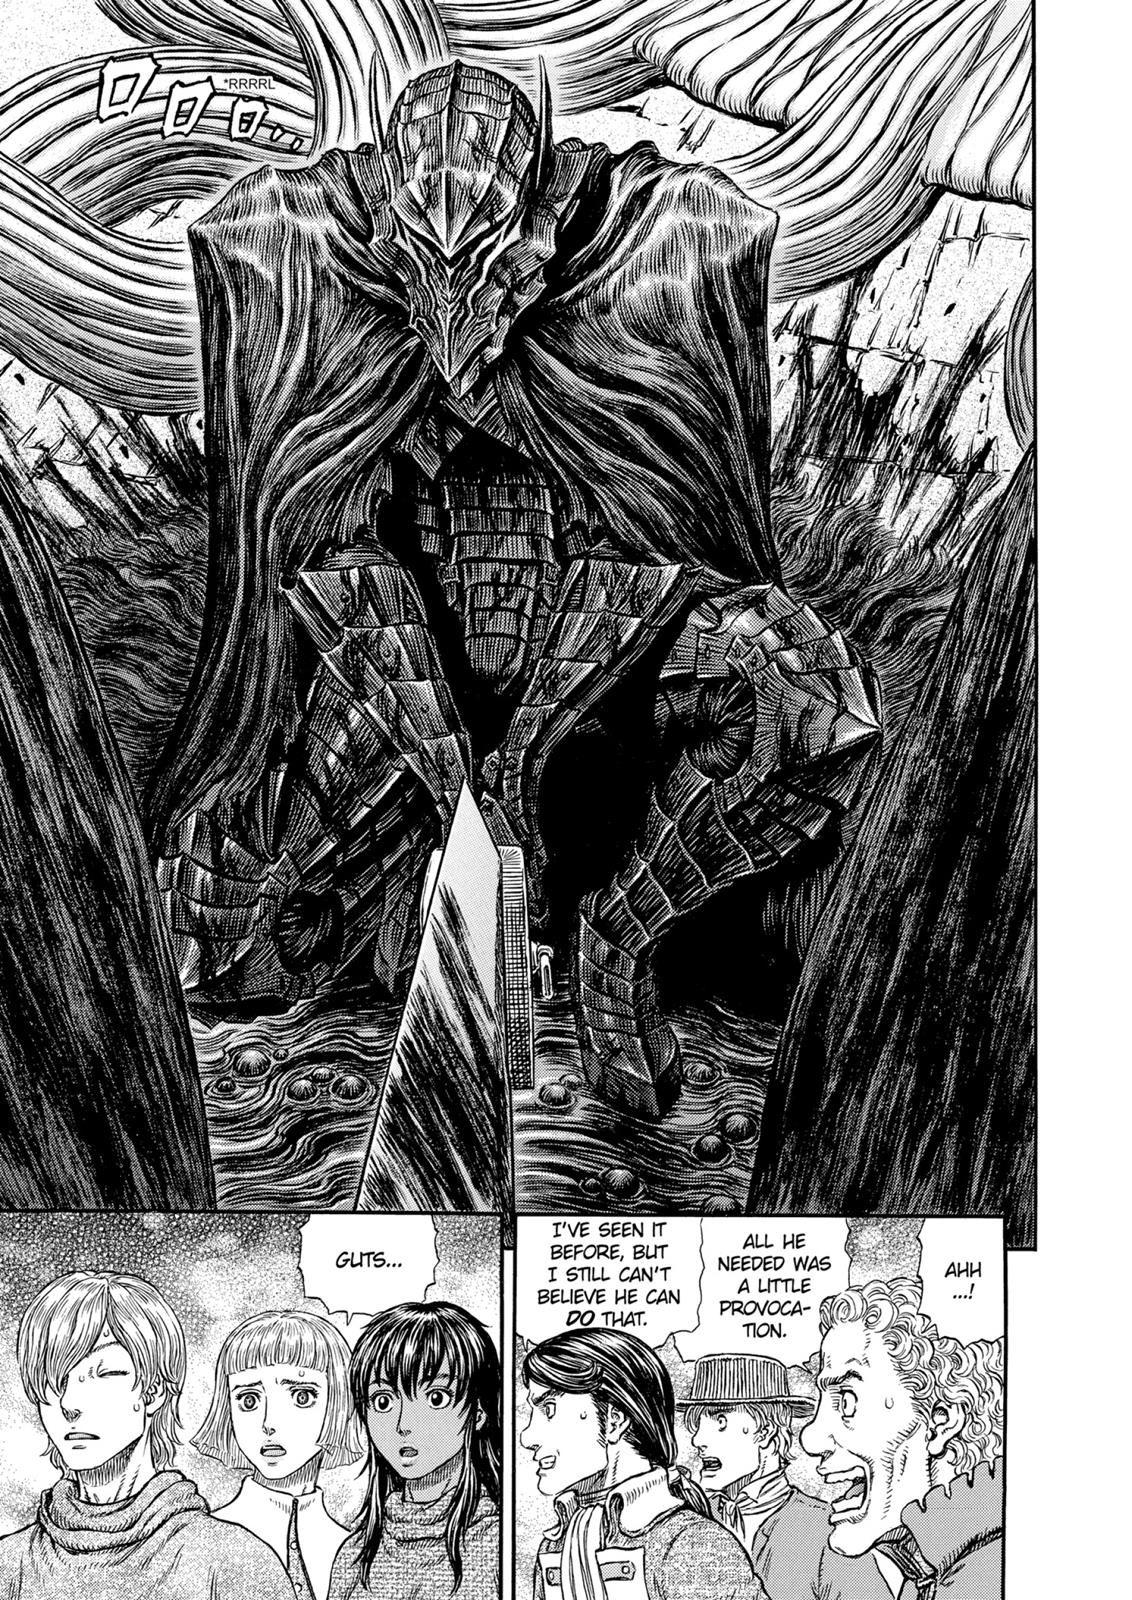 Berserk Manga Chapter 315 image 19